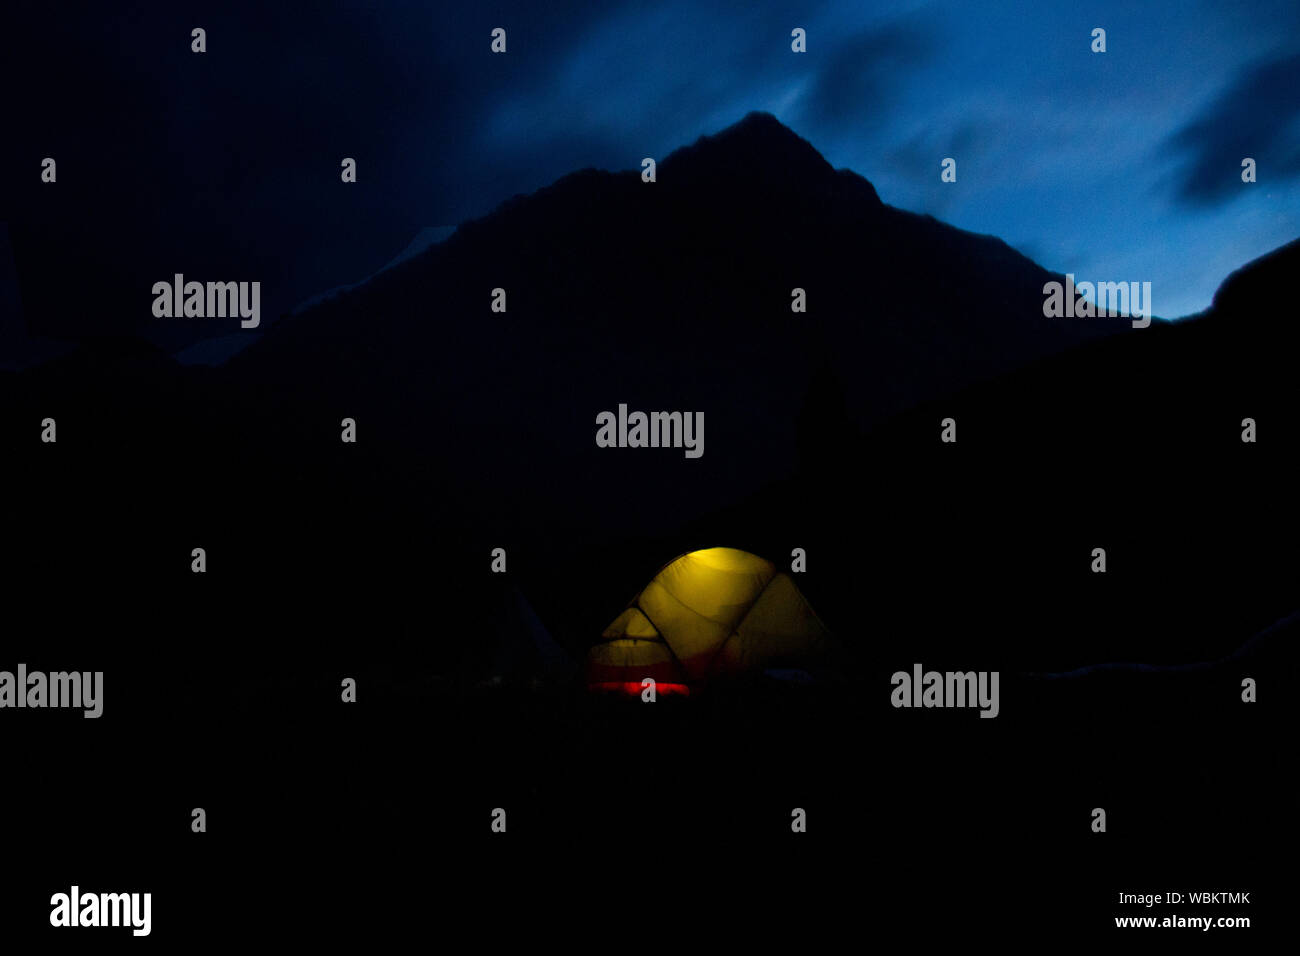 Vista nocturna de camping: una carpa iluminada desde el interior, sihoutte de montañas en el fondo Foto de stock